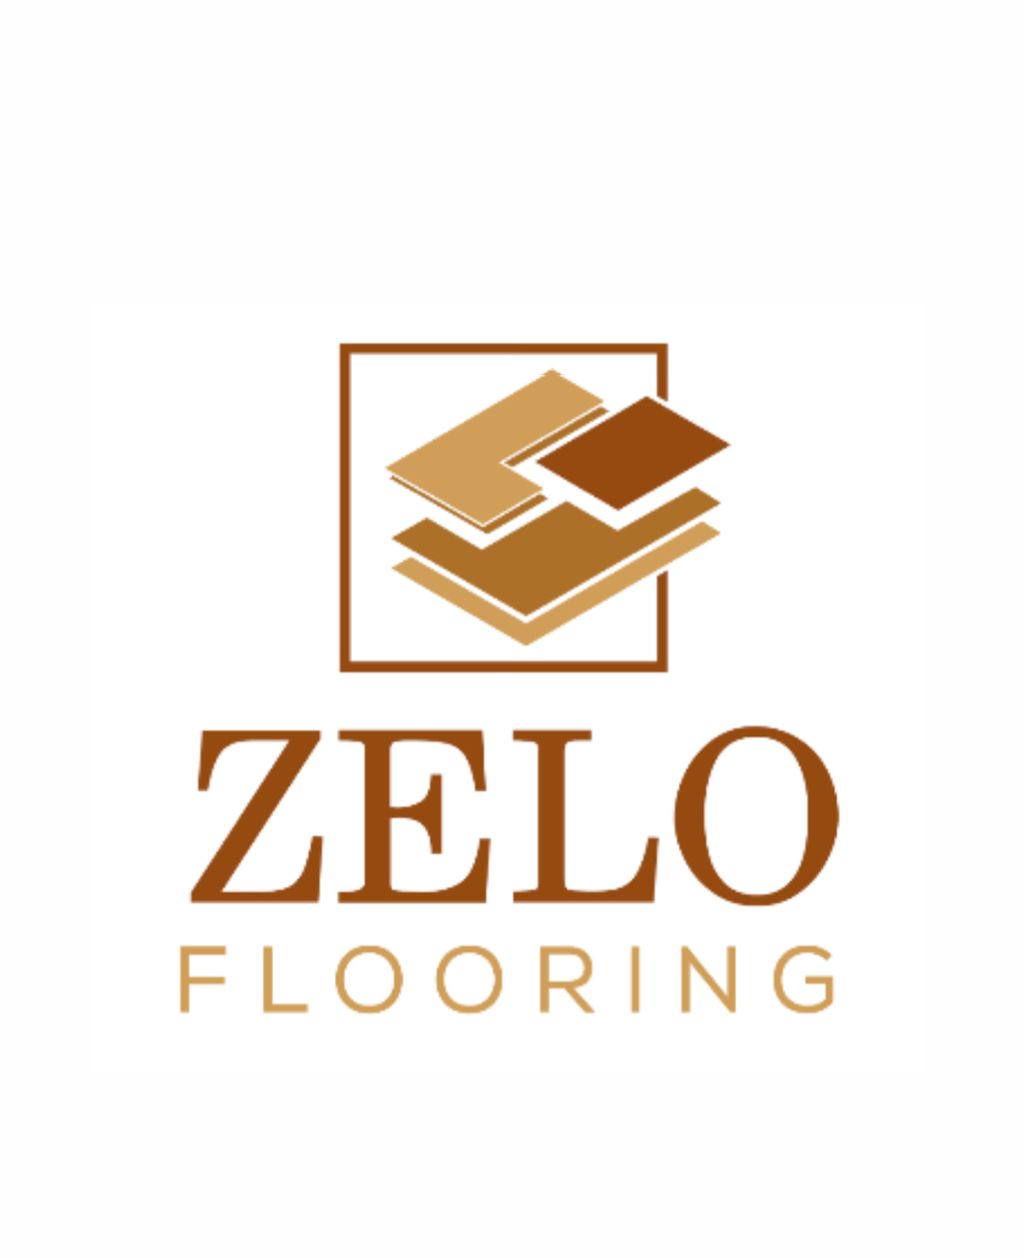 Zelo Flooring